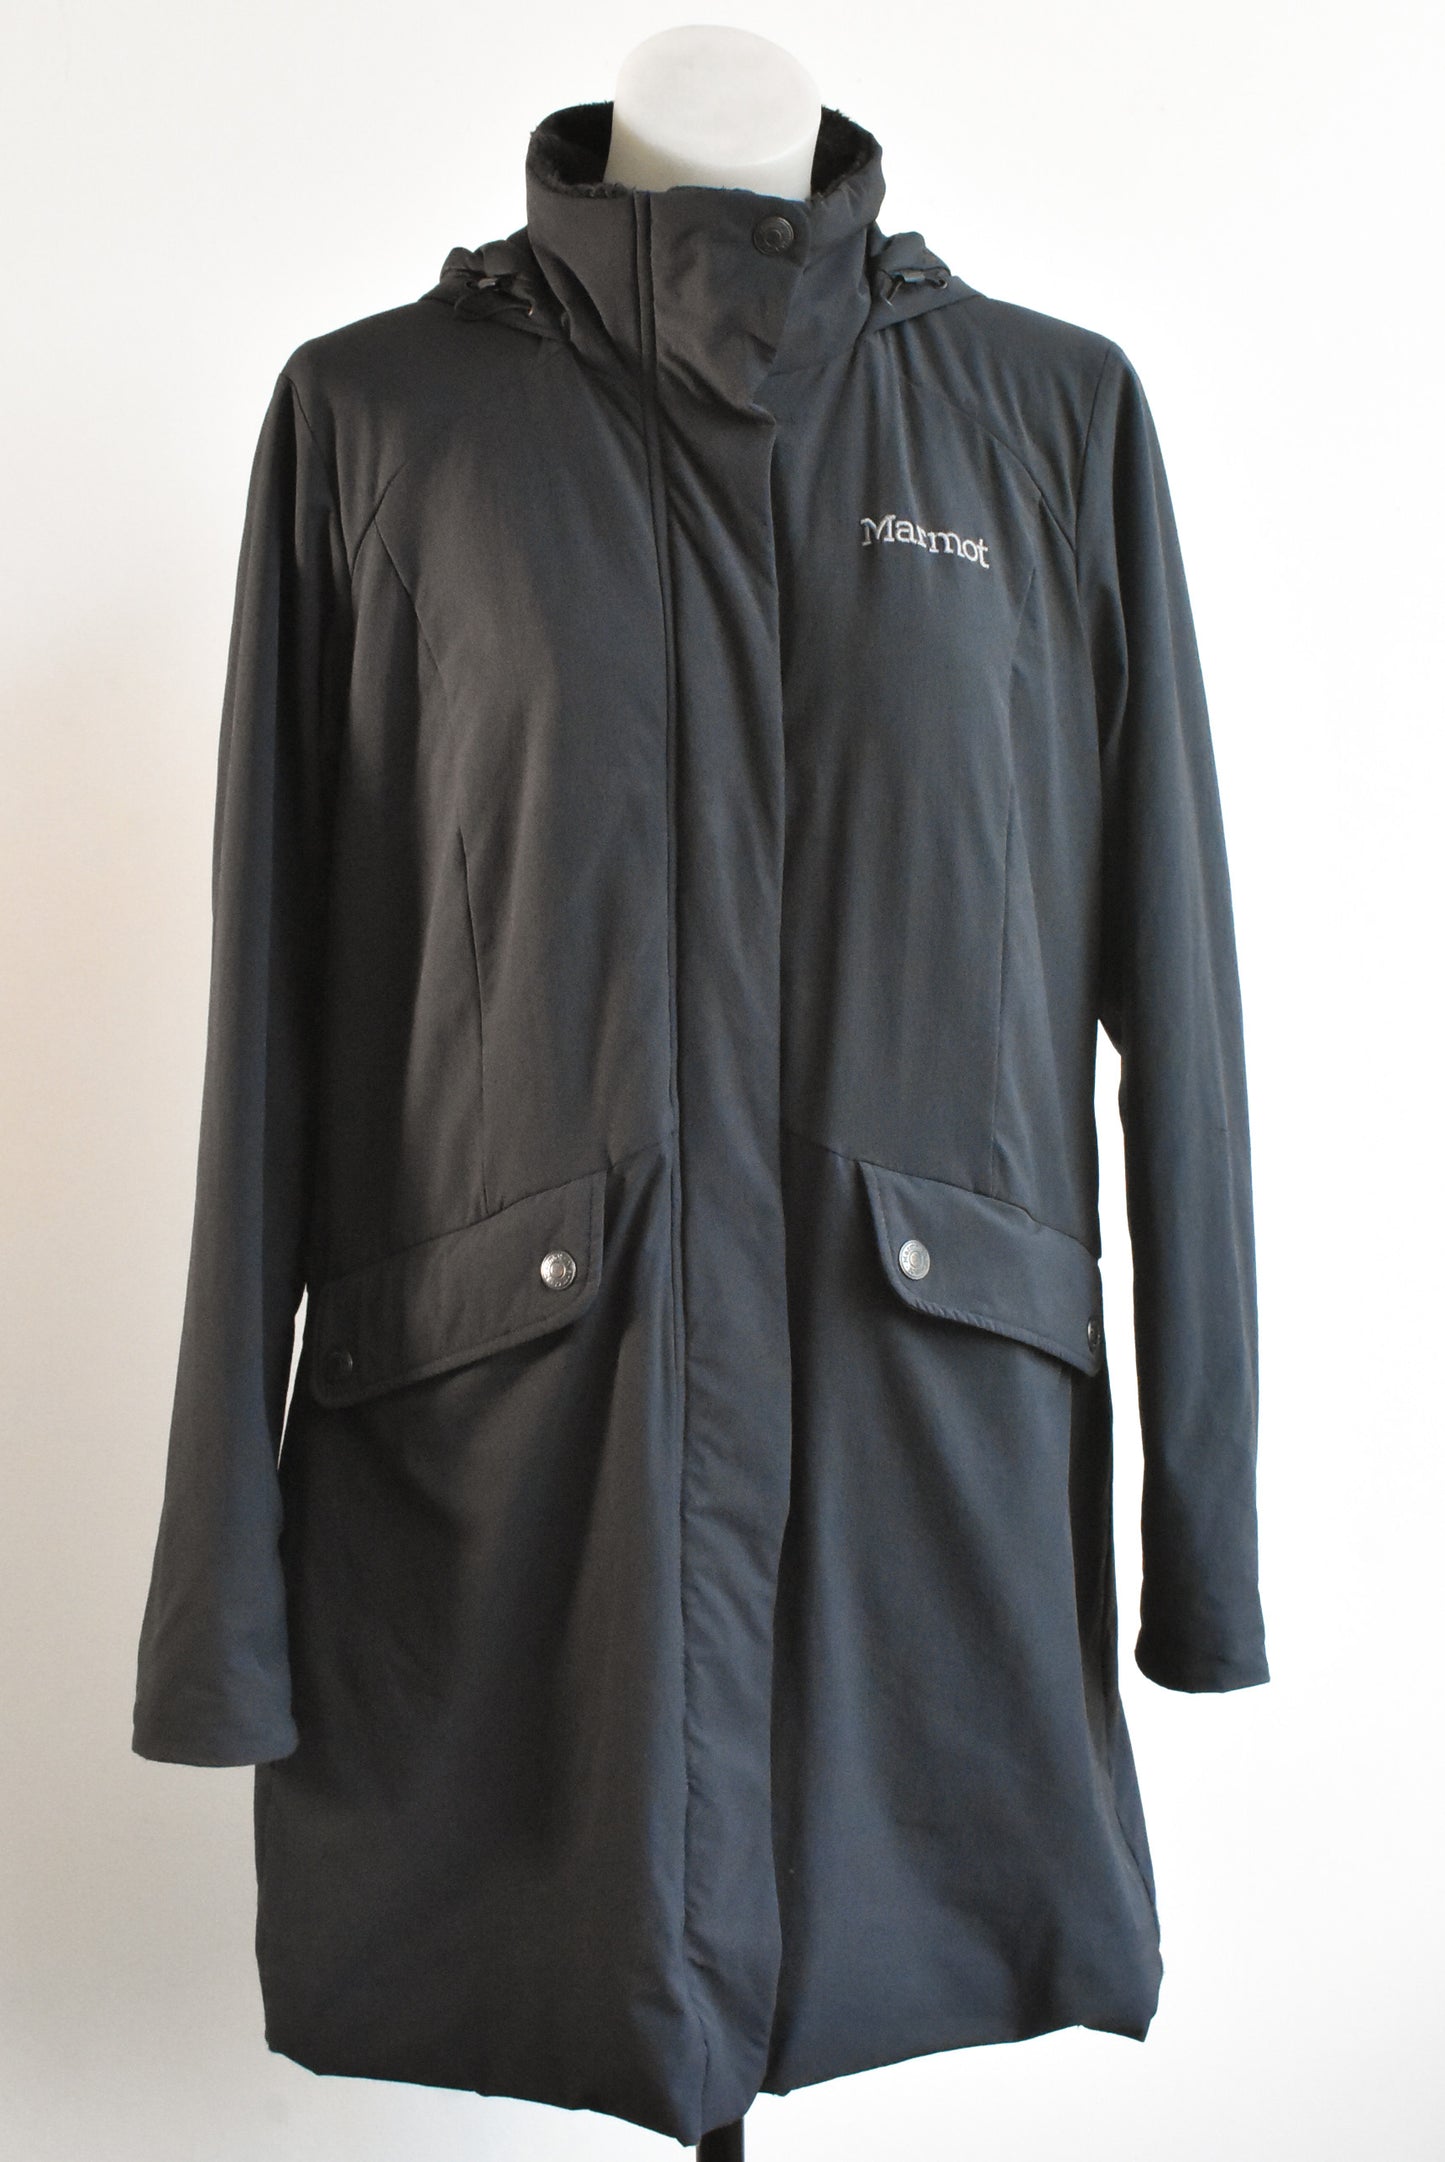 Marmot hooded jacket, size XL